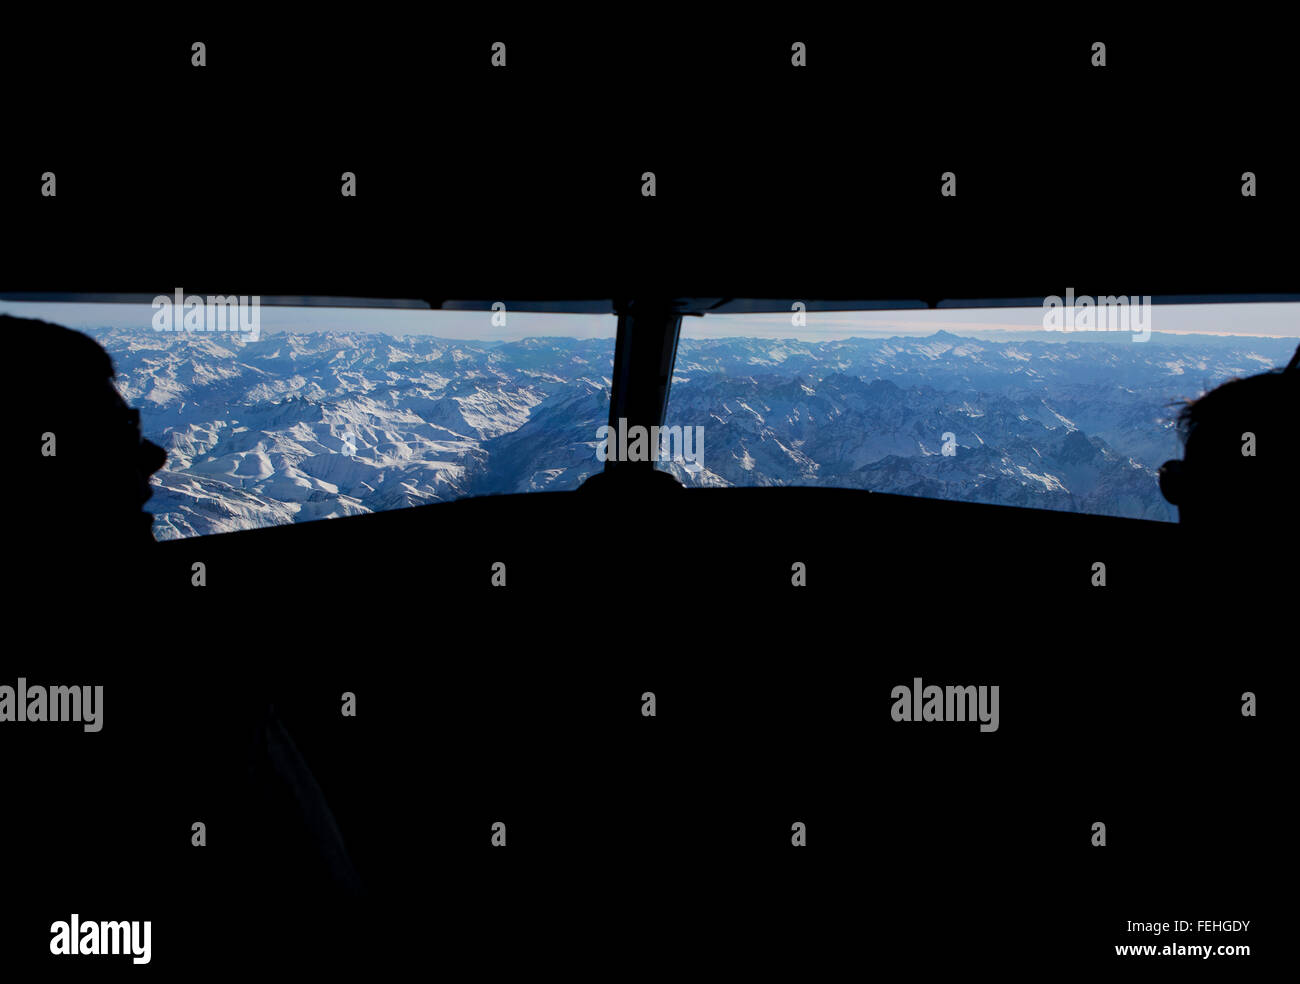 Vue aérienne de la France, de Suisse et des Alpes italiennes. Banque D'Images